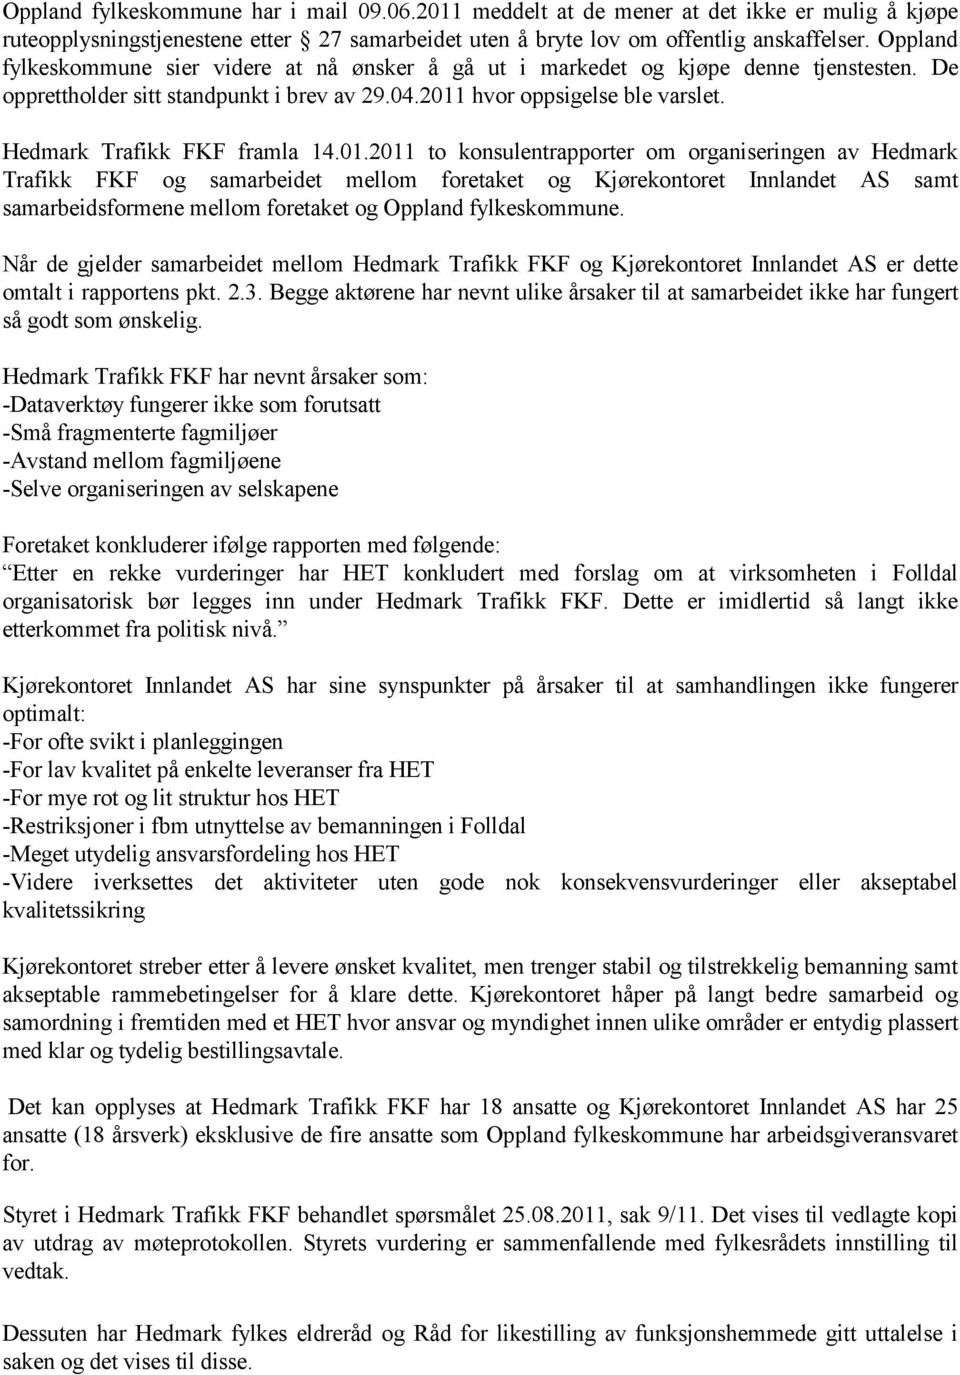 Hedmark Trafikk FKF framla 14.01.